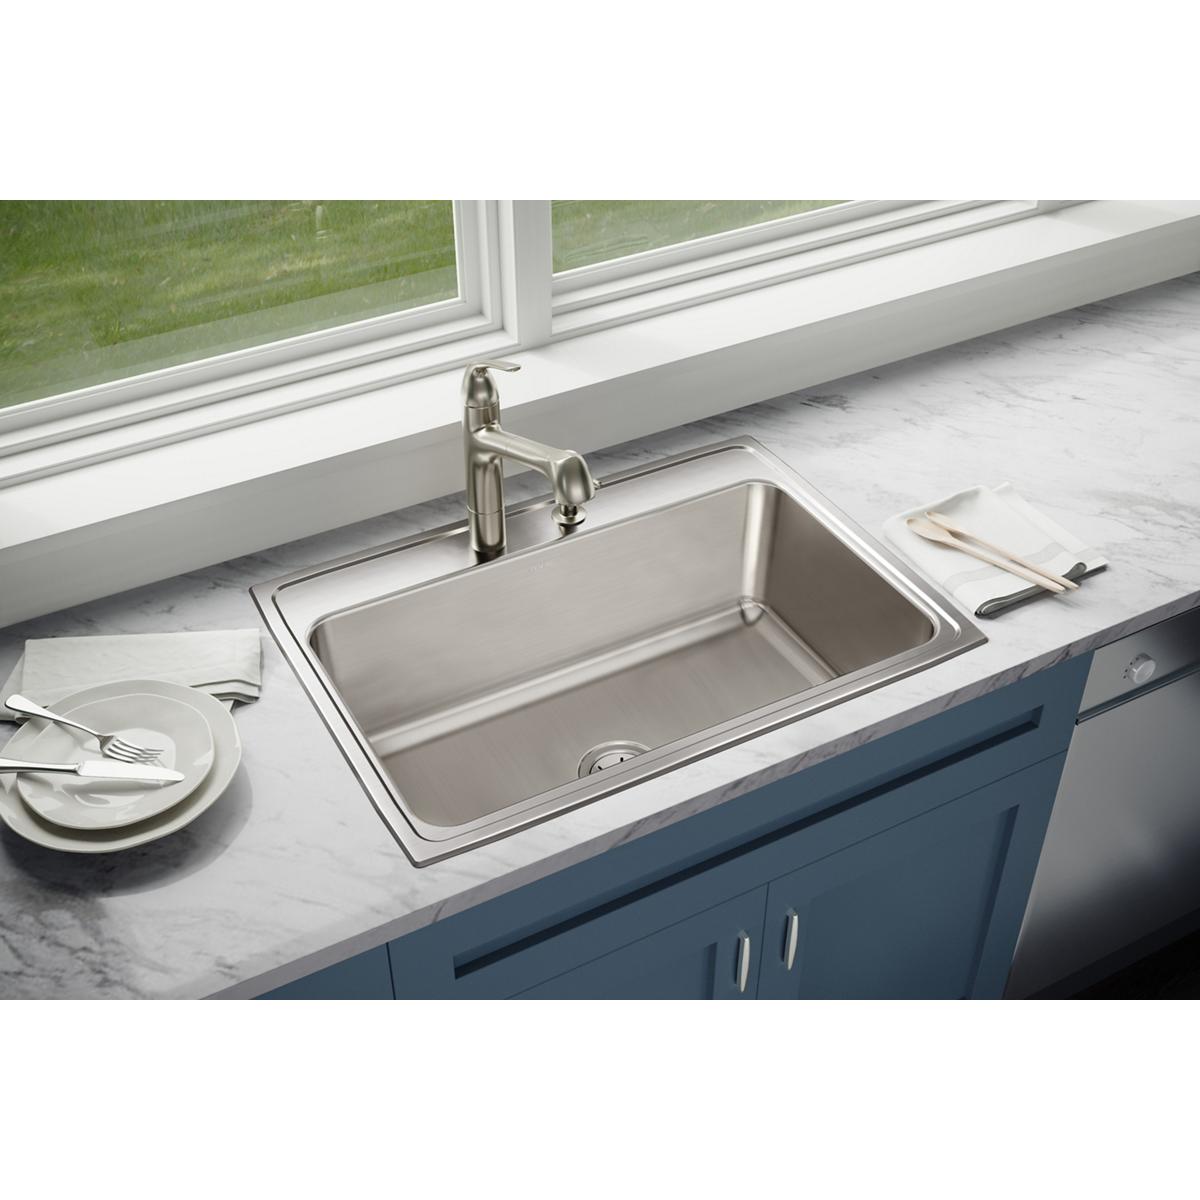 Elkay Lustertone Classic 31" x 22" x 10-1/8" Stainless Steel Single Bowl Drop-in Sink